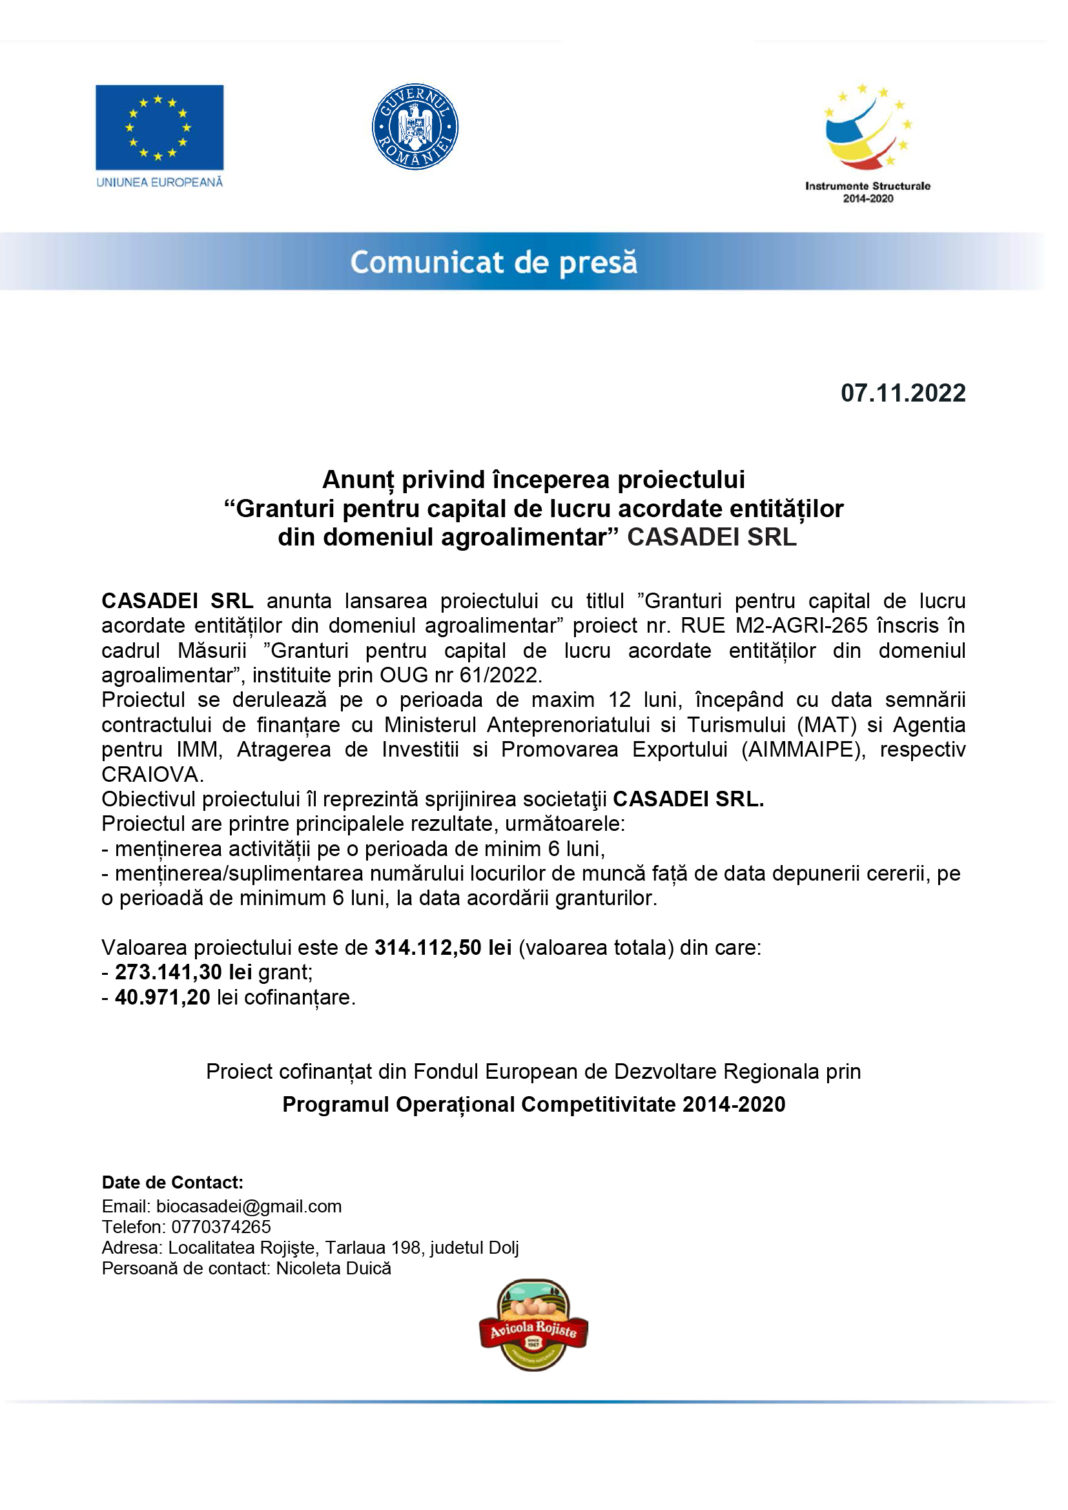 Anunț privind începerea proiectului “Granturi pentru capital de lucru acordate entităților din domeniul agroalimentar” CASADEI SRL